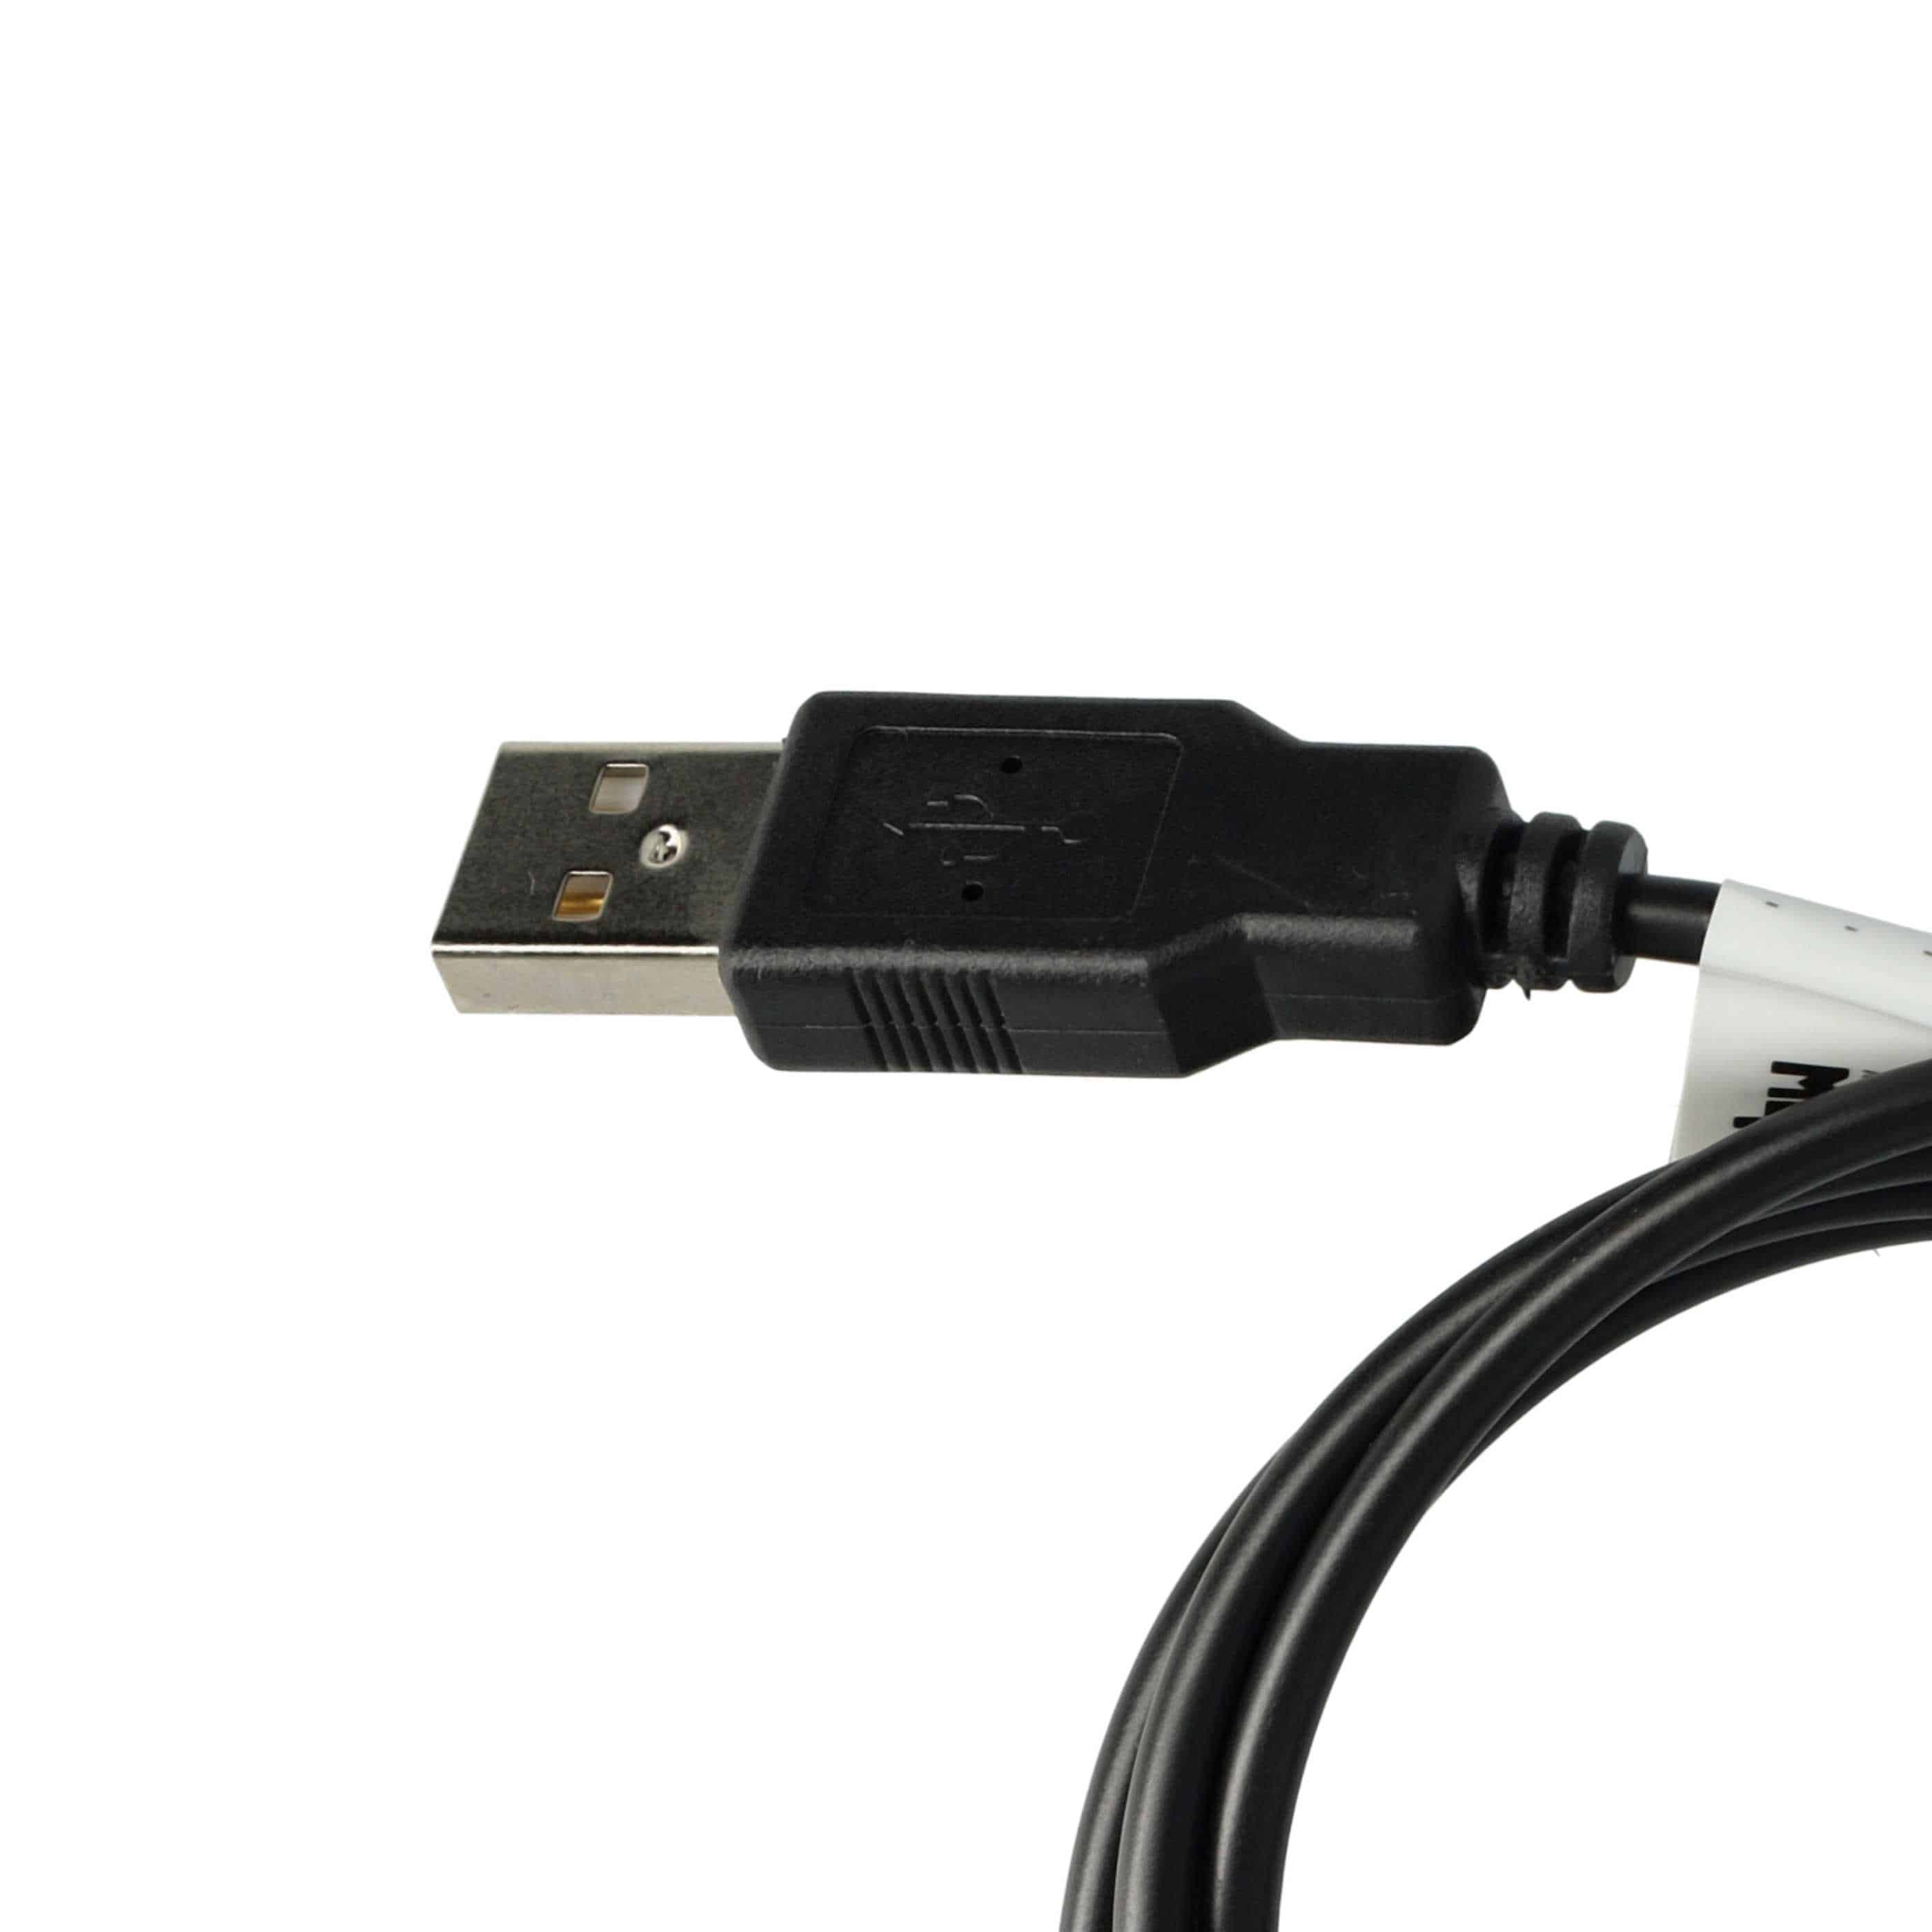 Câble USB synchronisation de données 2-en-1 avec charge compatible avec PVRH 140 Mustek et autres GPS